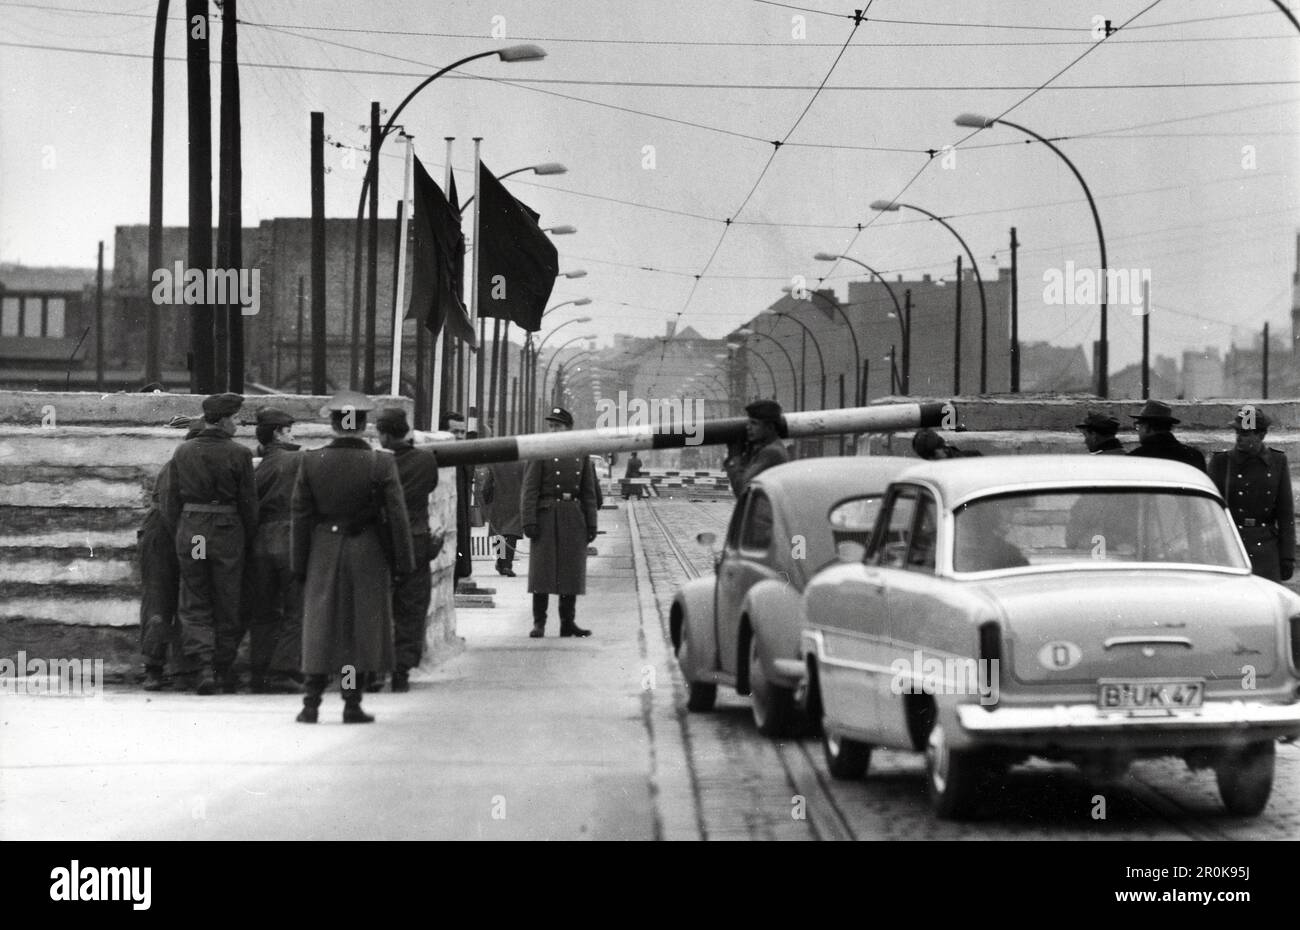 An der innerstädtischen Grenze werden Autos aus Westberlin vor der Fahrt in den Ostteil der Stadt von sowjetoschen Soldaten kontrolliert, Berlin, Deutschland 1962. Stockfoto